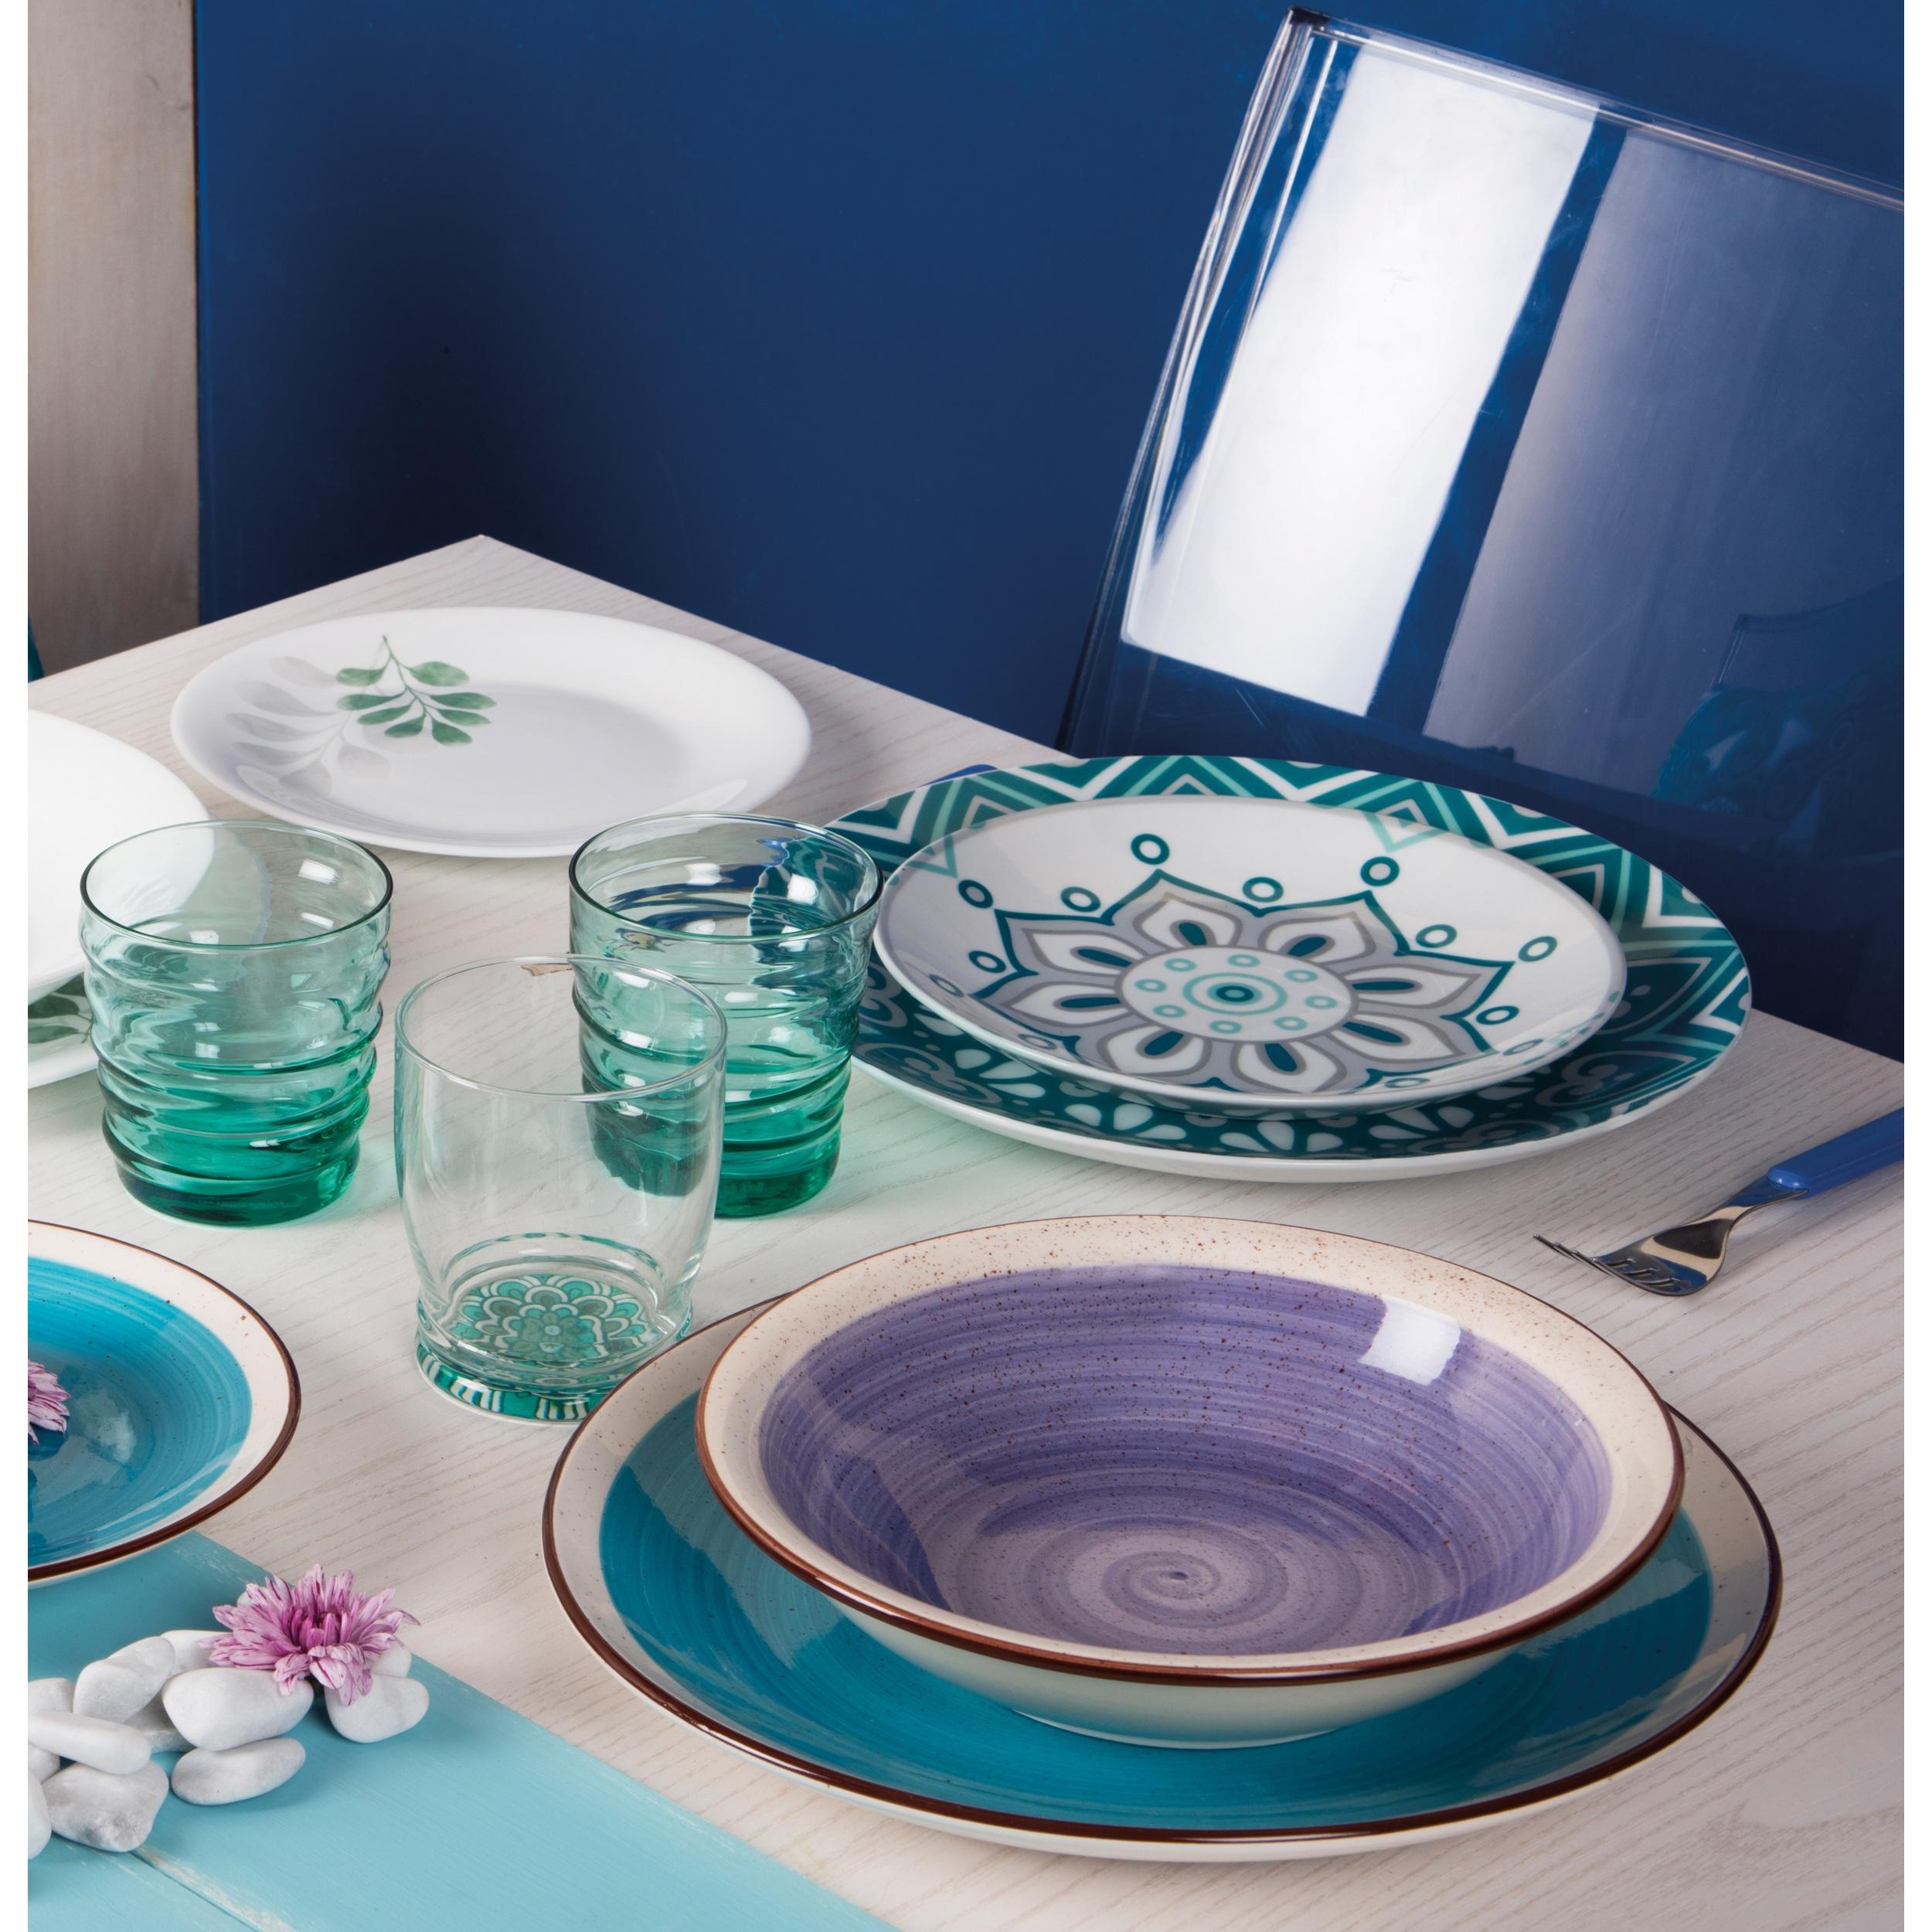 Servizio piatti 18 pezzi Excelsa Crazy azzurro, ceramica multicolore